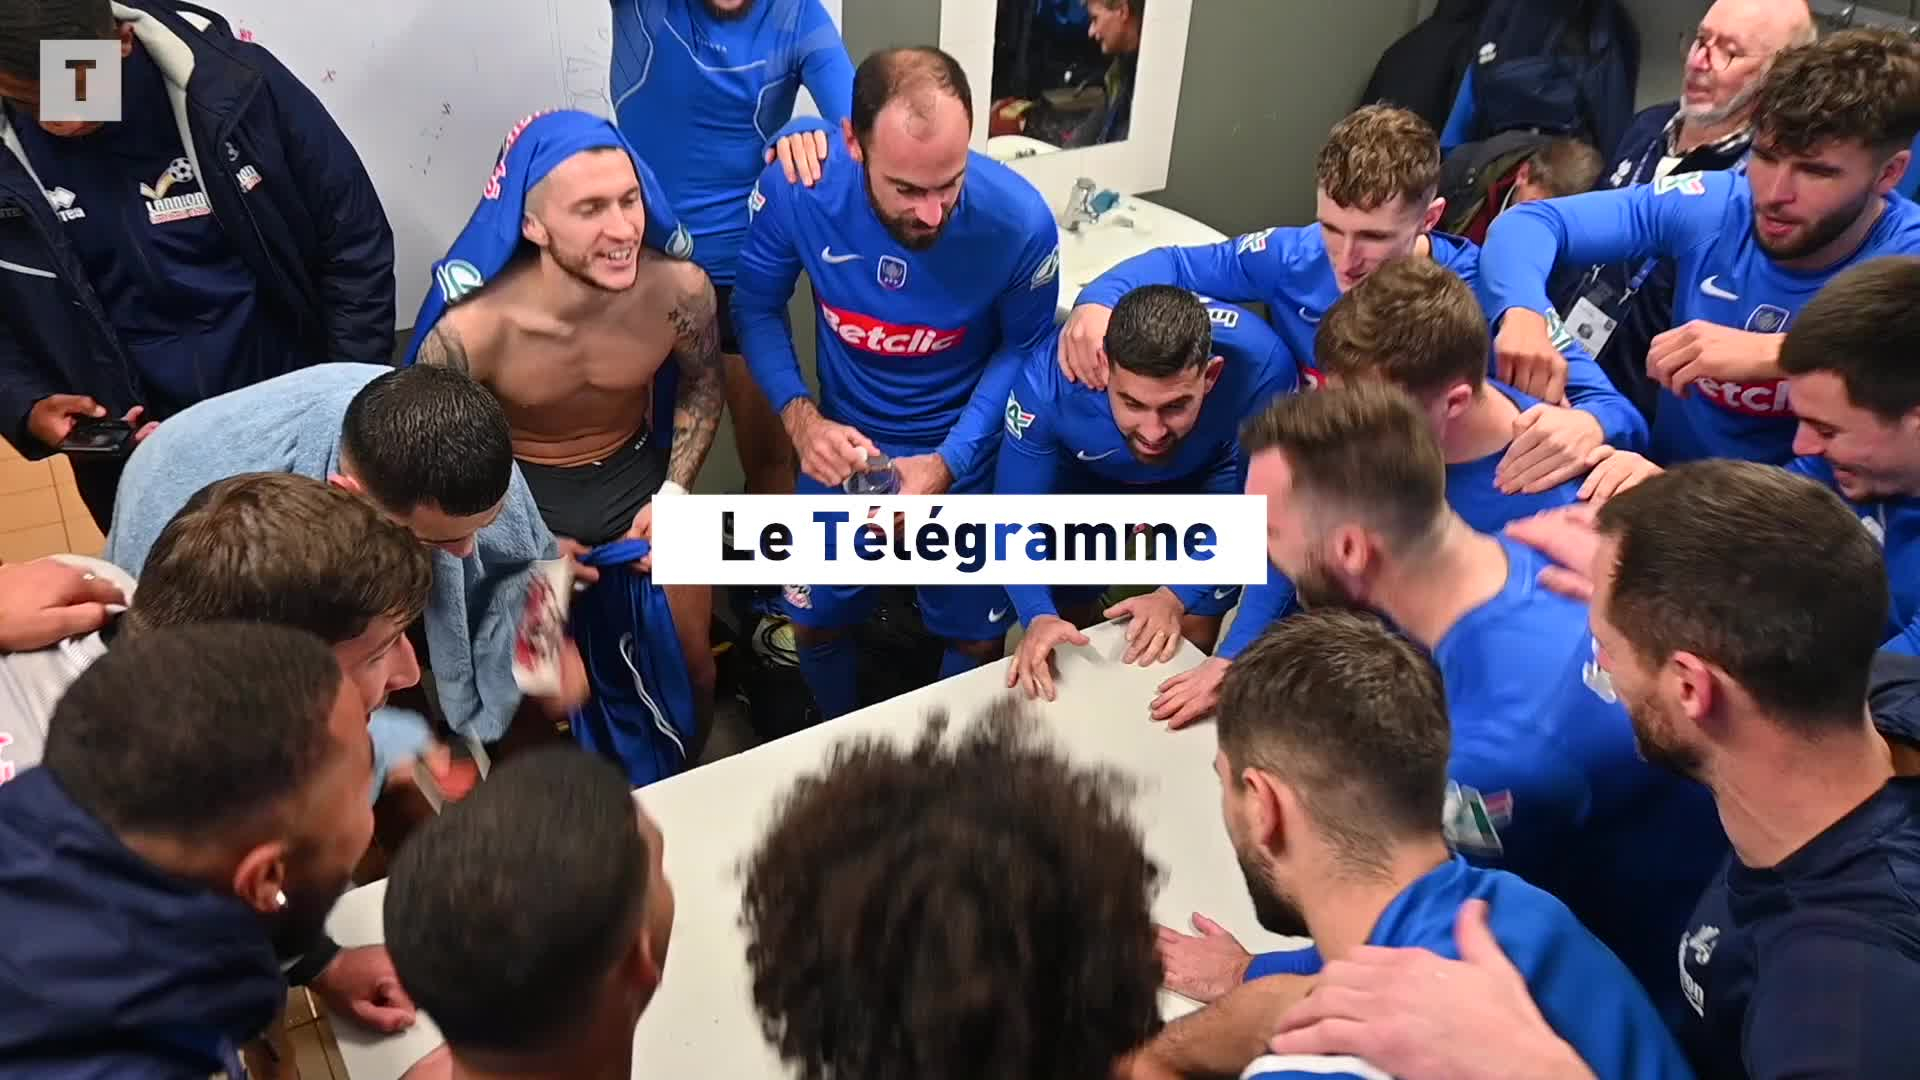 Employé chez Leclerc, il va affronter Toulouse en Coupe de France  (Le Télégramme)